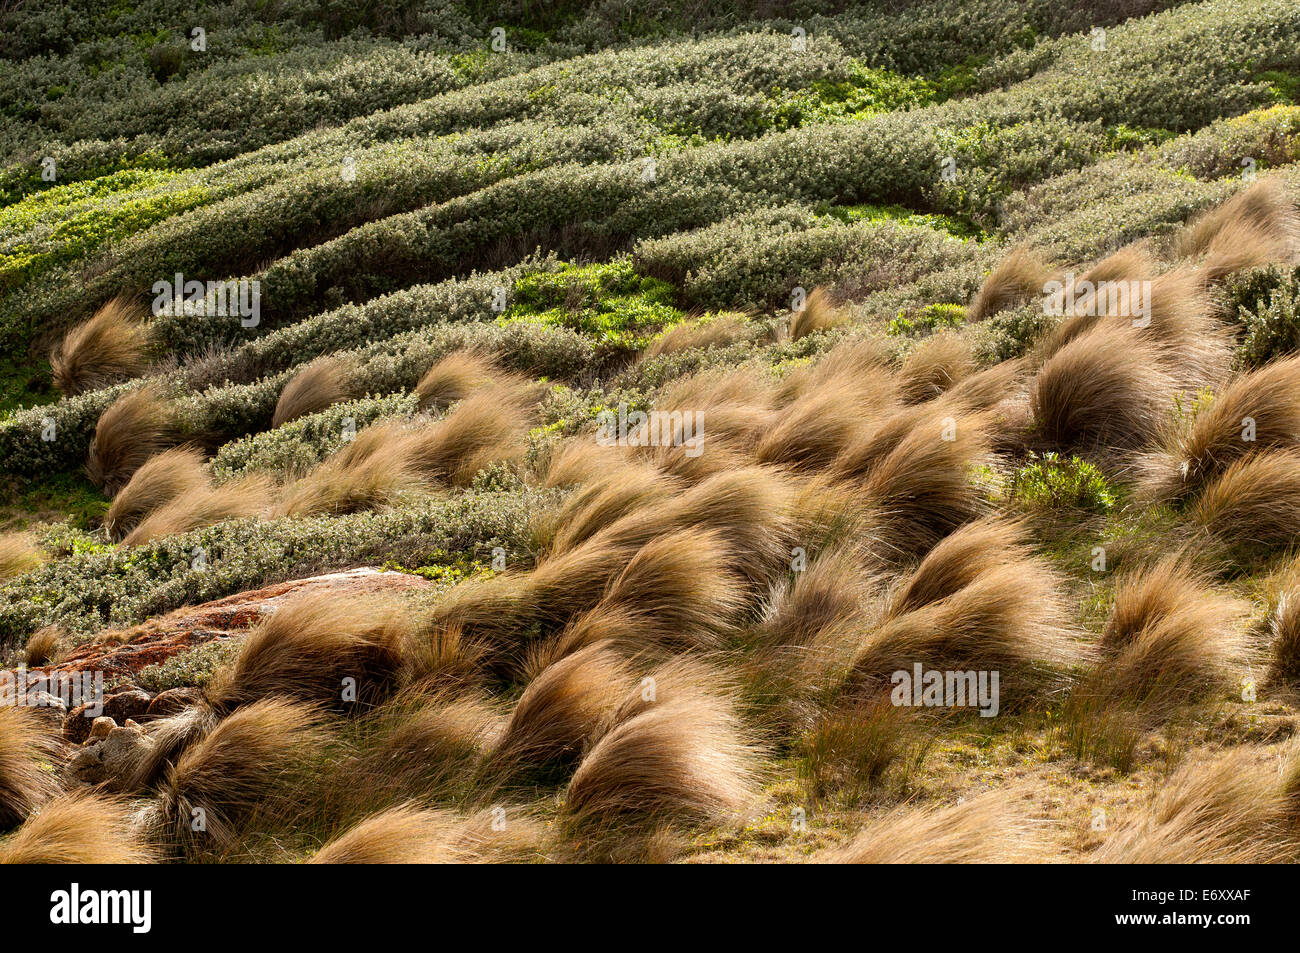 El fuerte viento en matas de pasto en el punto Hicks, Parque Nacional Croajingolong, Victoria, Australia Foto de stock